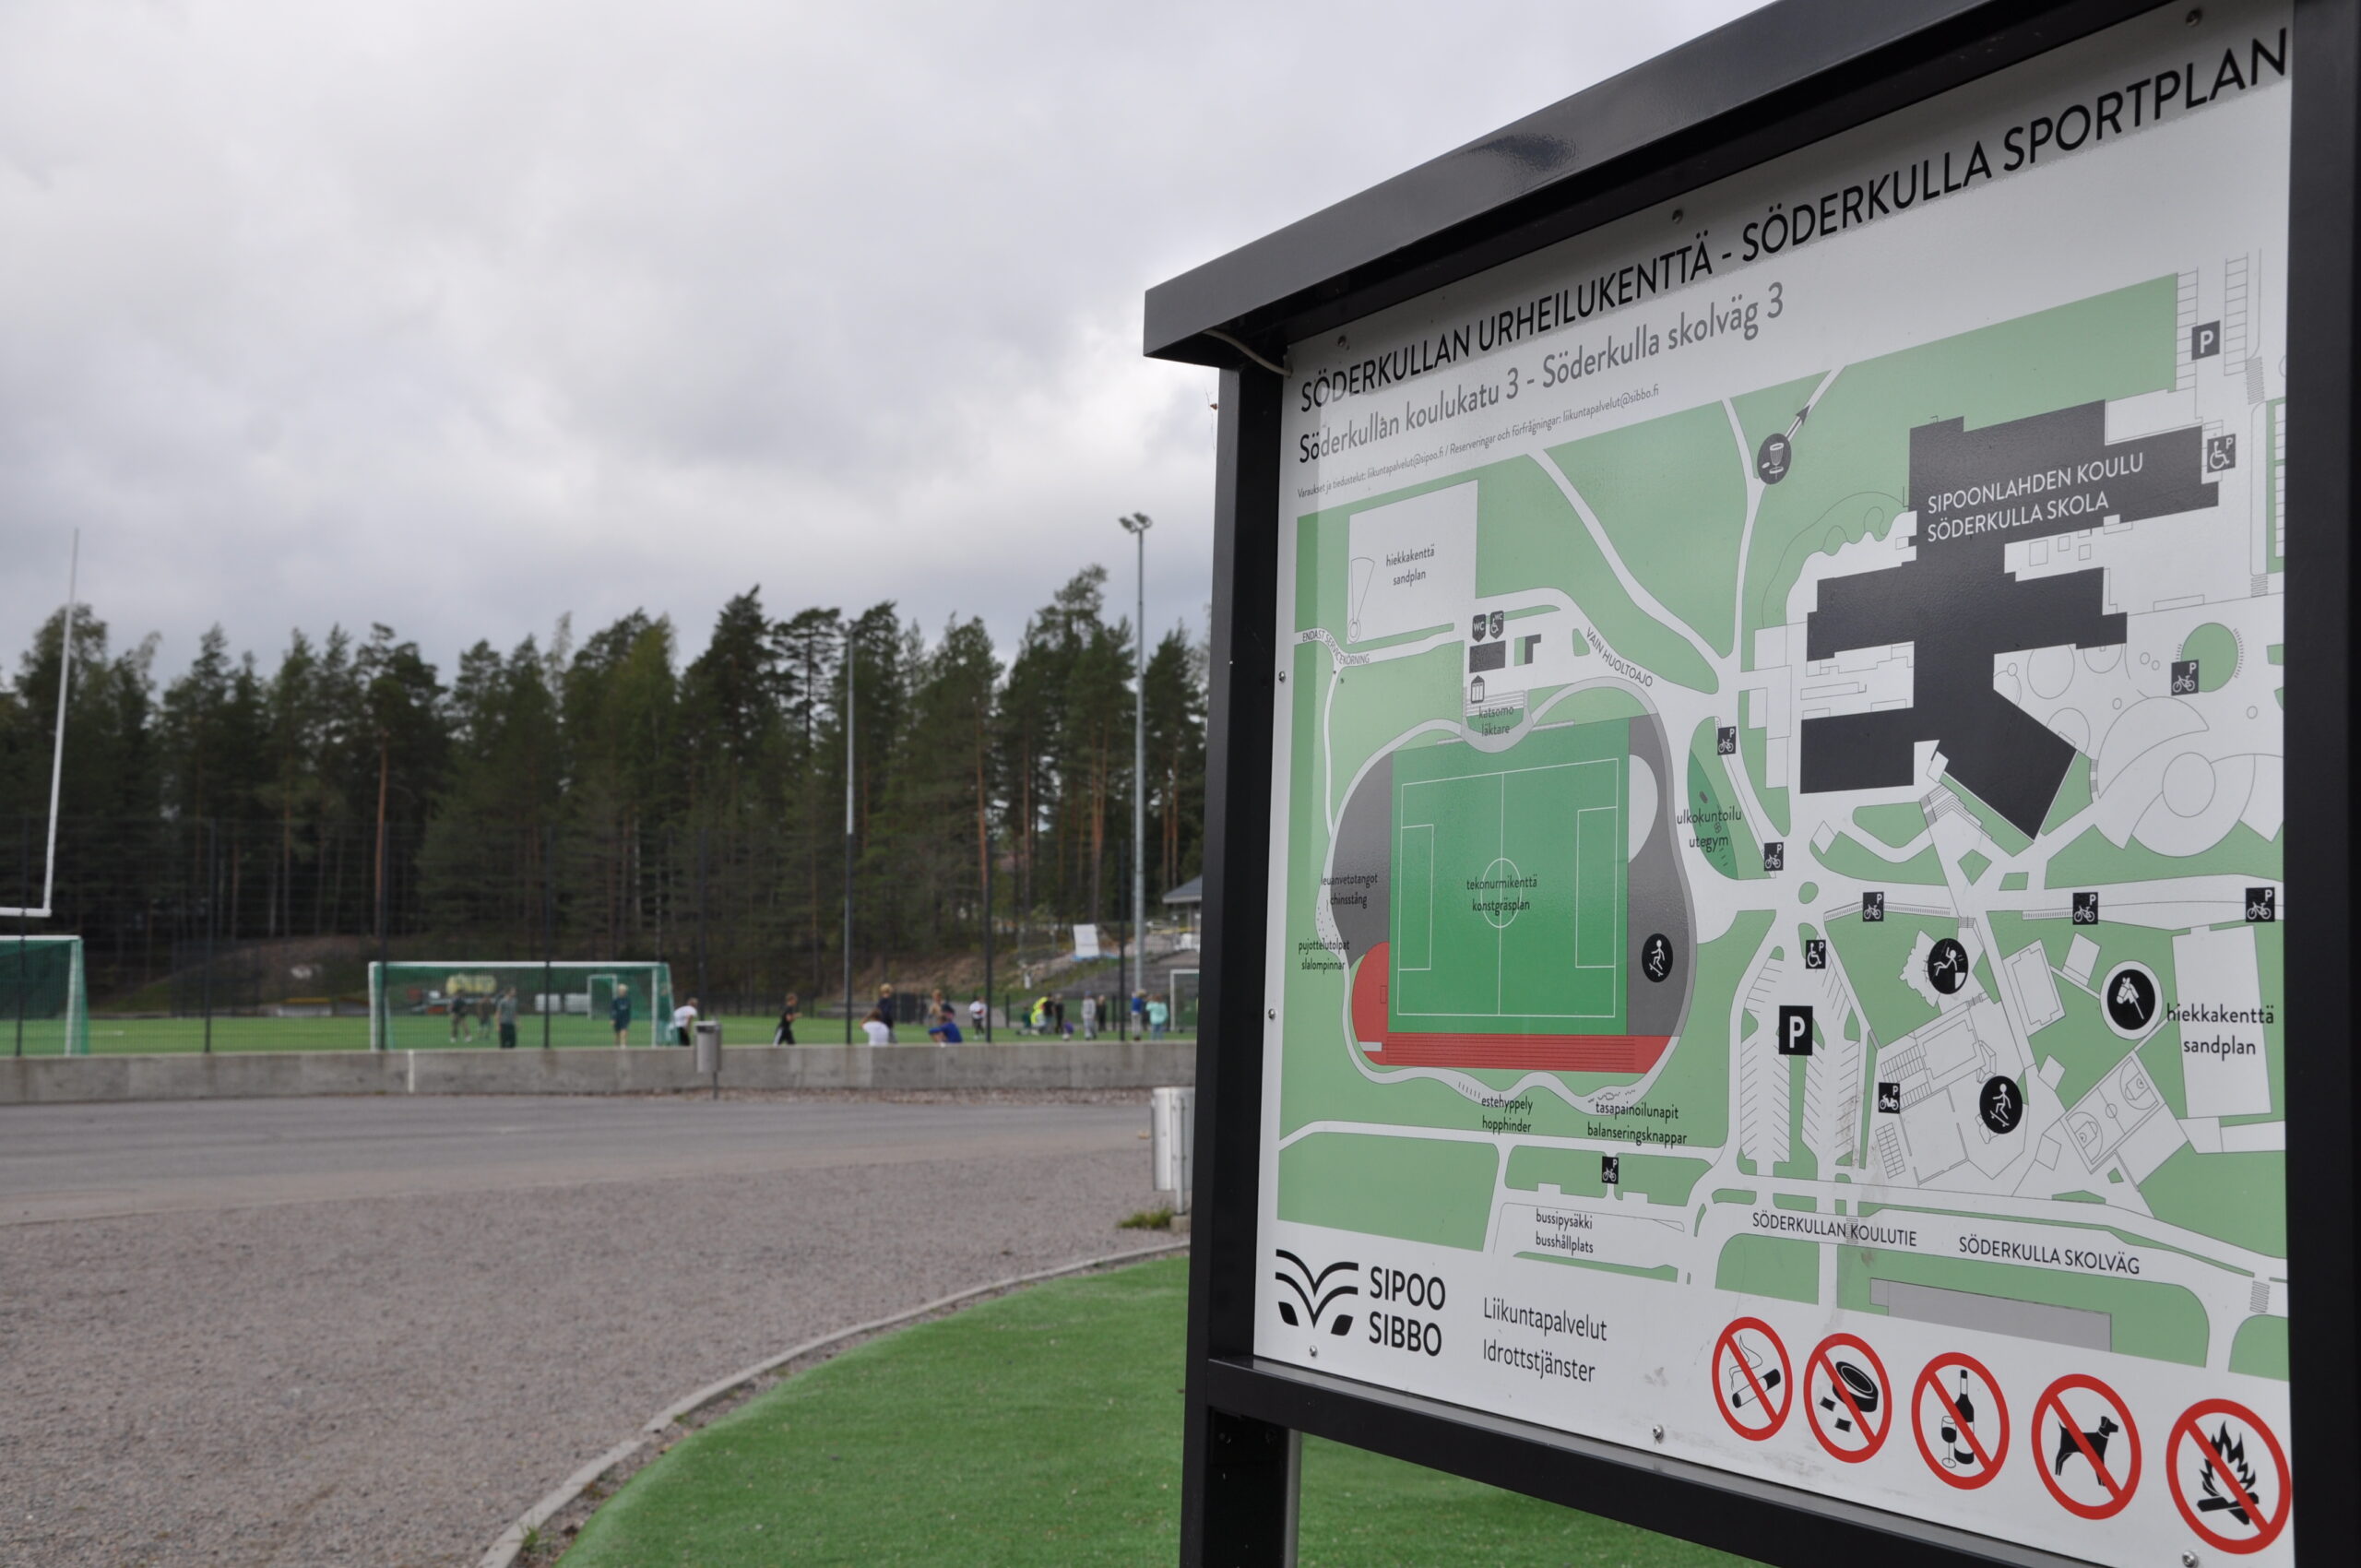 Oikealla Söderkullan urheilukentän infotaulu. Taustalla hiekkarata ja tekonurmikenttä jalkapallokenttineen sekä havupuita.